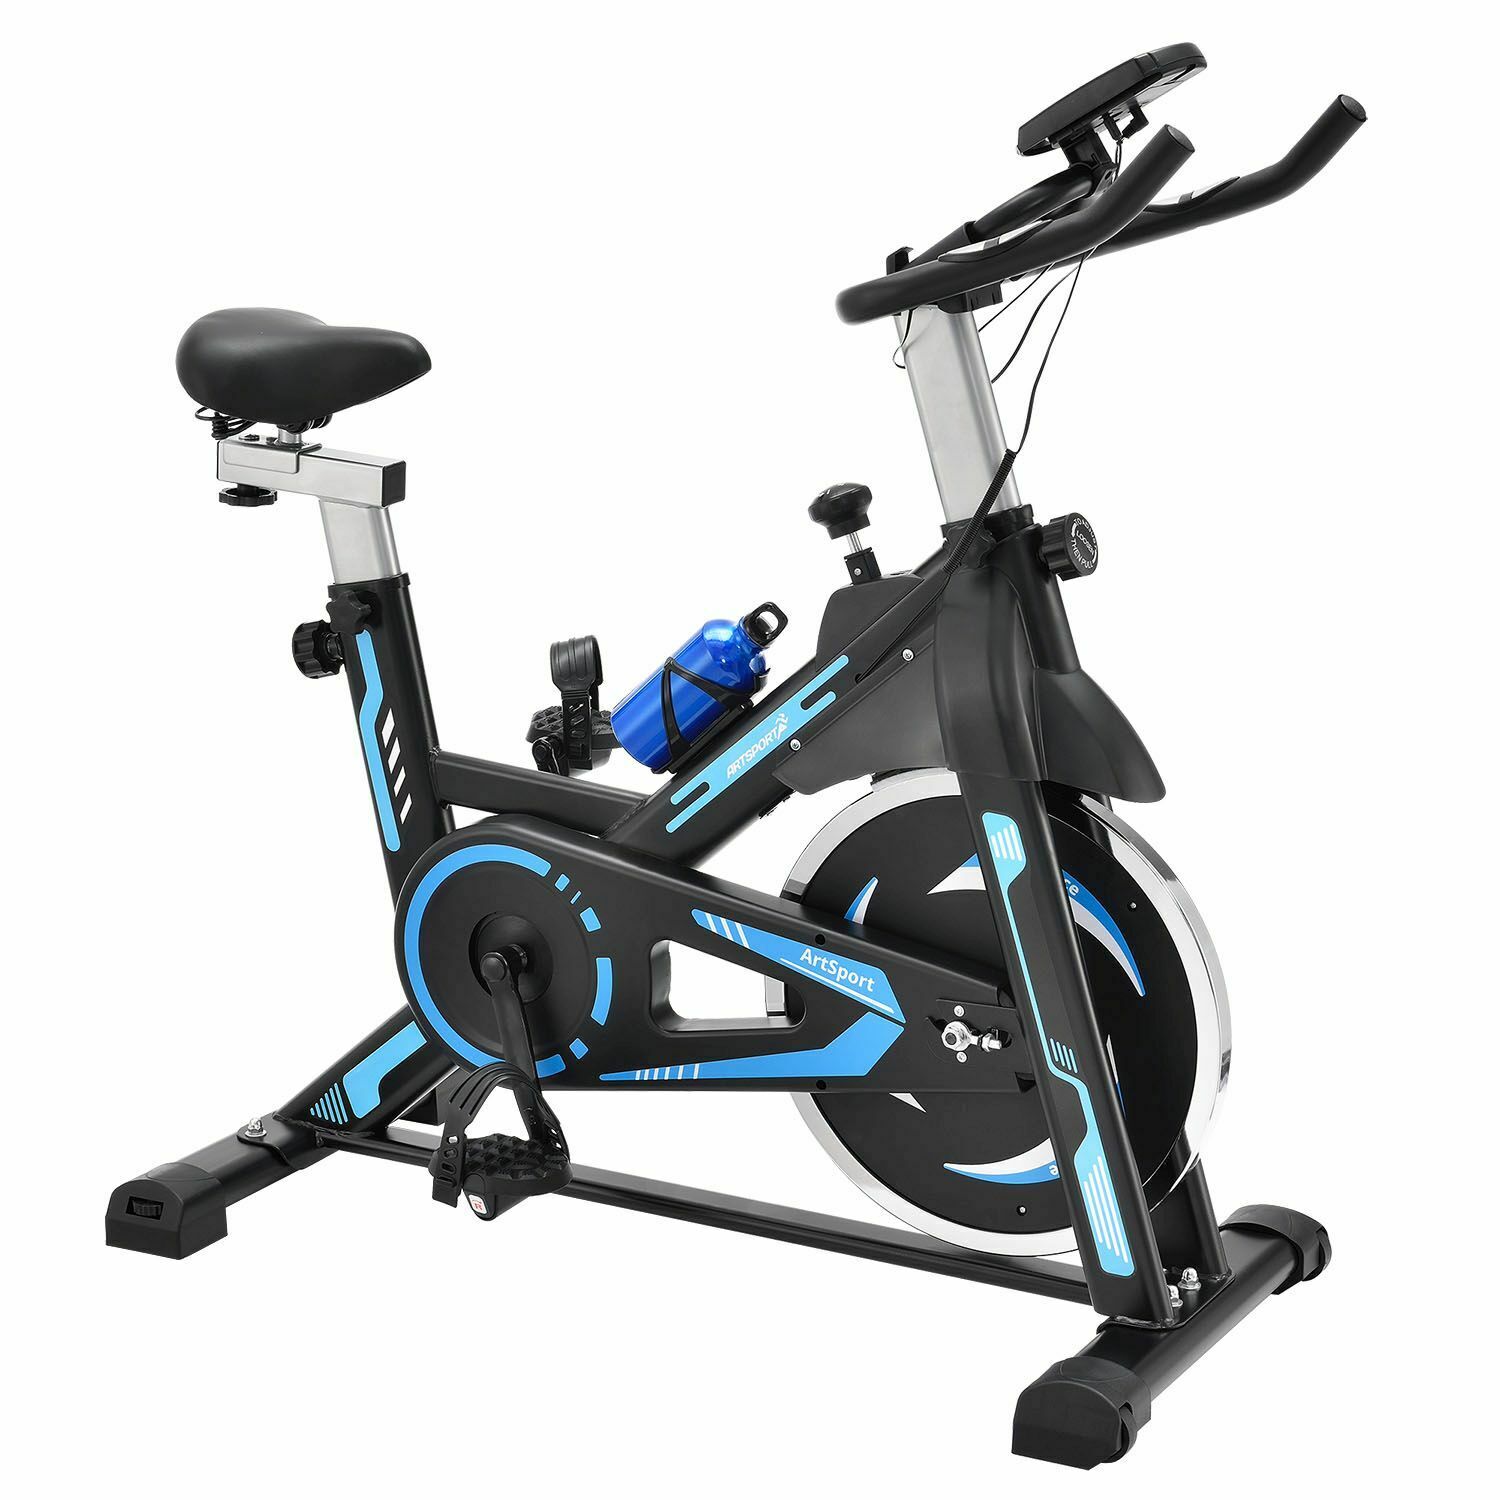 Speedbike Heimtrainer Ergometer Indoor Cycling Fahrrad Fitness 120 kg ArtSport®